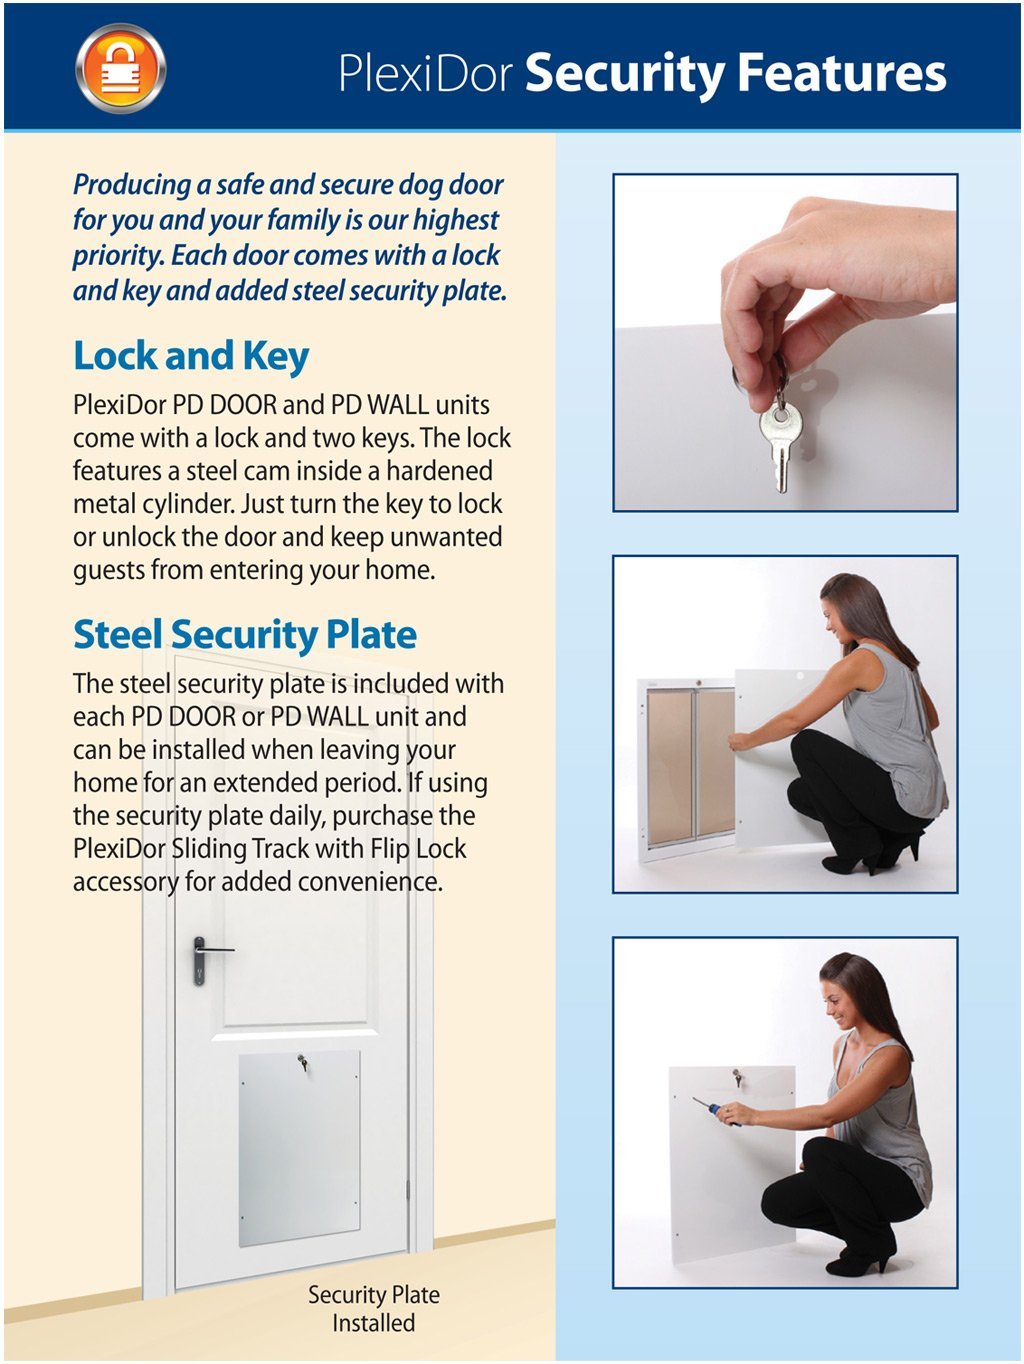 PlexiDor PD DOOR MD WH Medium Energy Efficient Weatherproof Pet Door With Key Security Lock White New